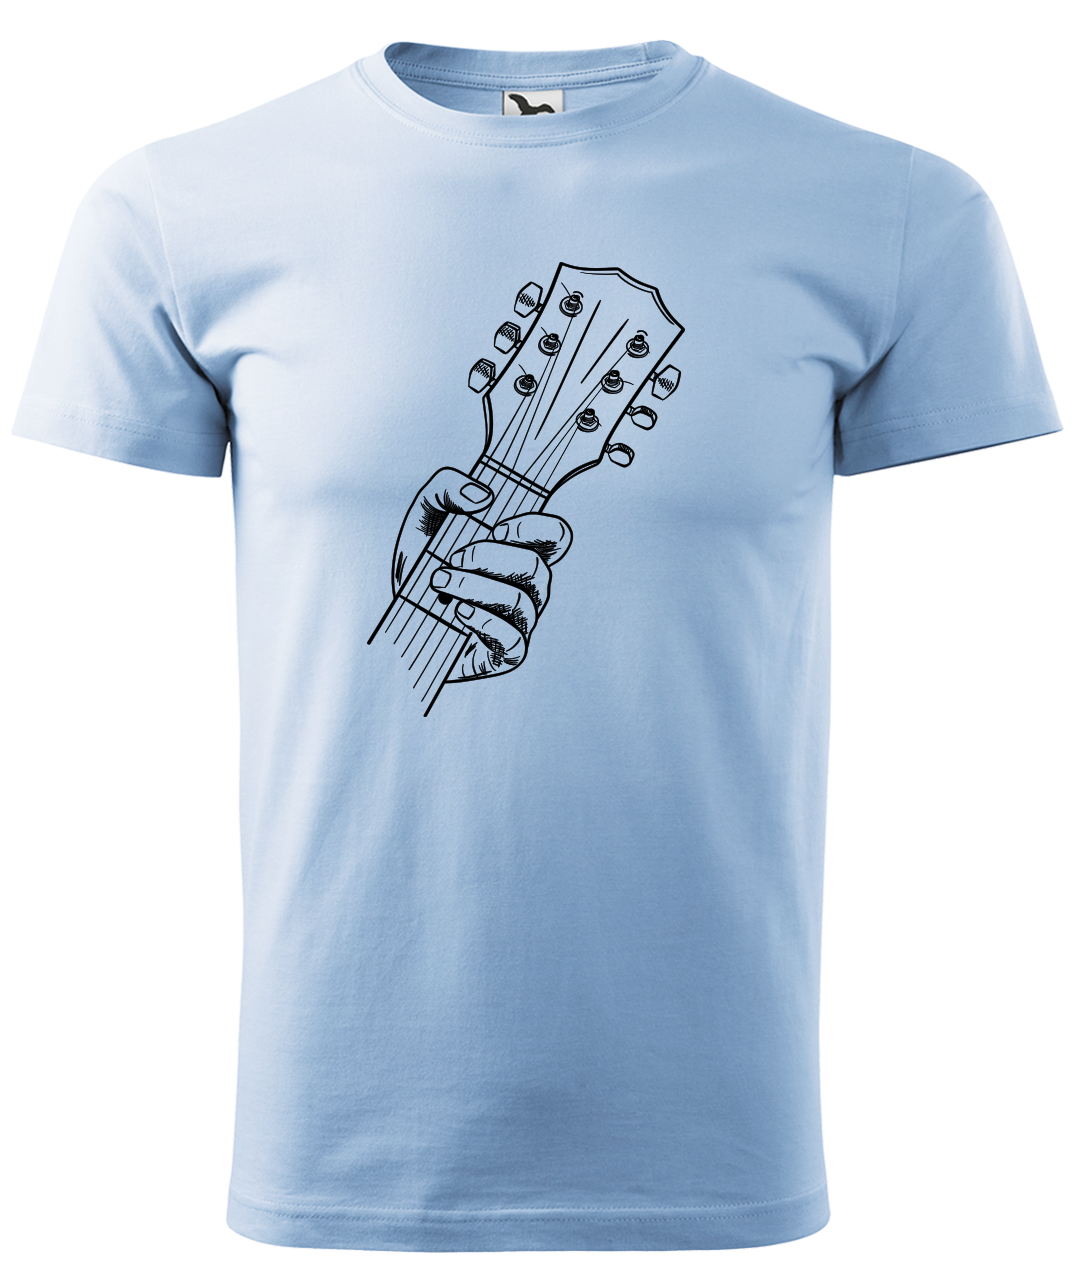 Dětské tričko s kytarou - Hlava kytary Velikost: 4 roky / 110 cm, Barva: Nebesky modrá (15)